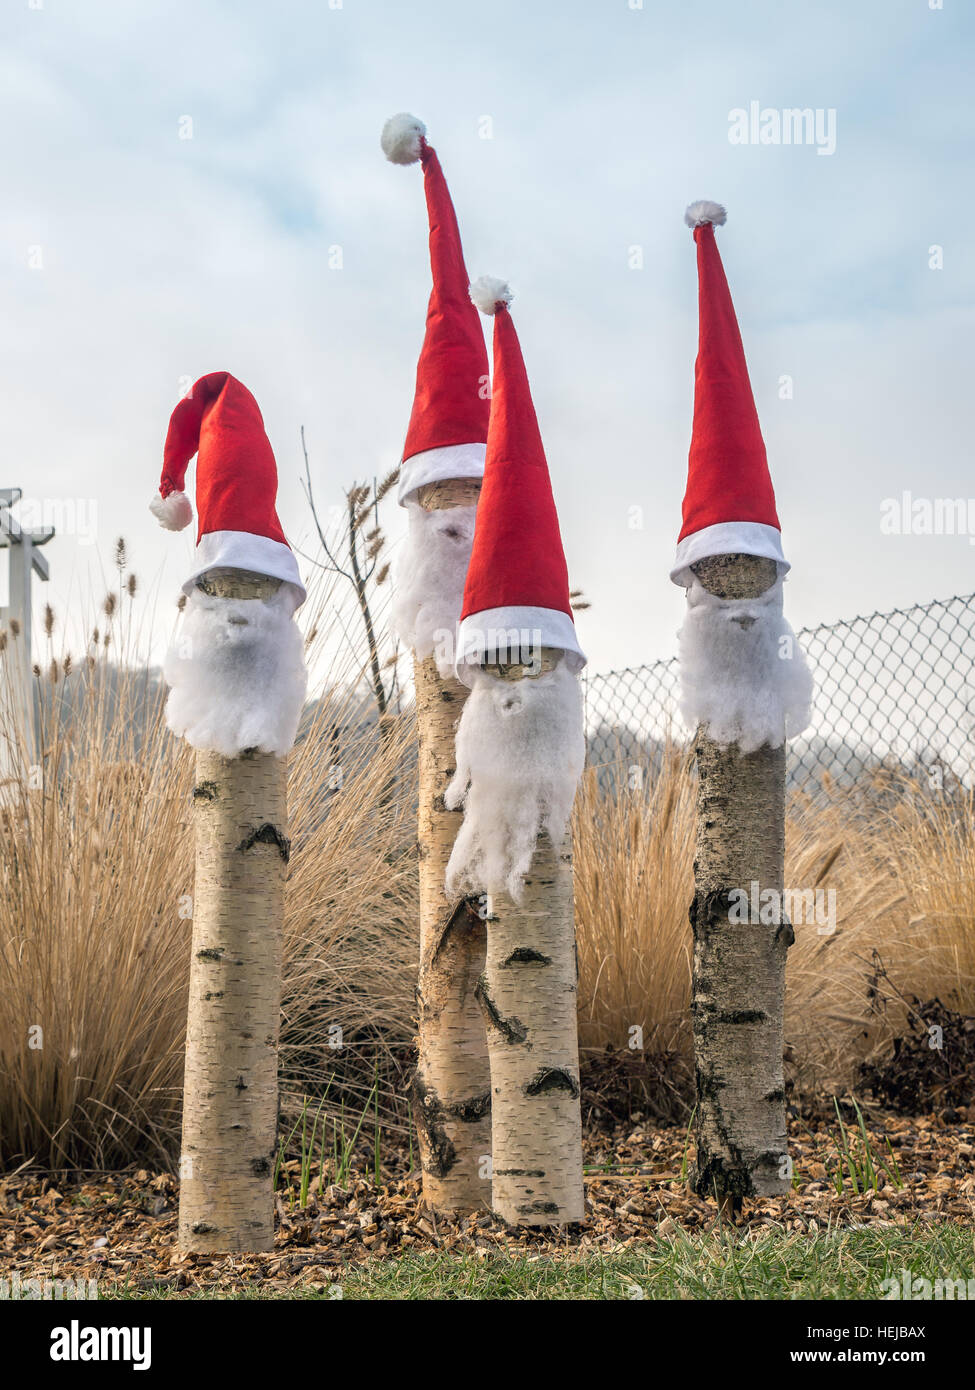 Vier der Weihnachtsmann Stil Gartenzwerge mit roten Hüten und weißen Bärten Stockfoto